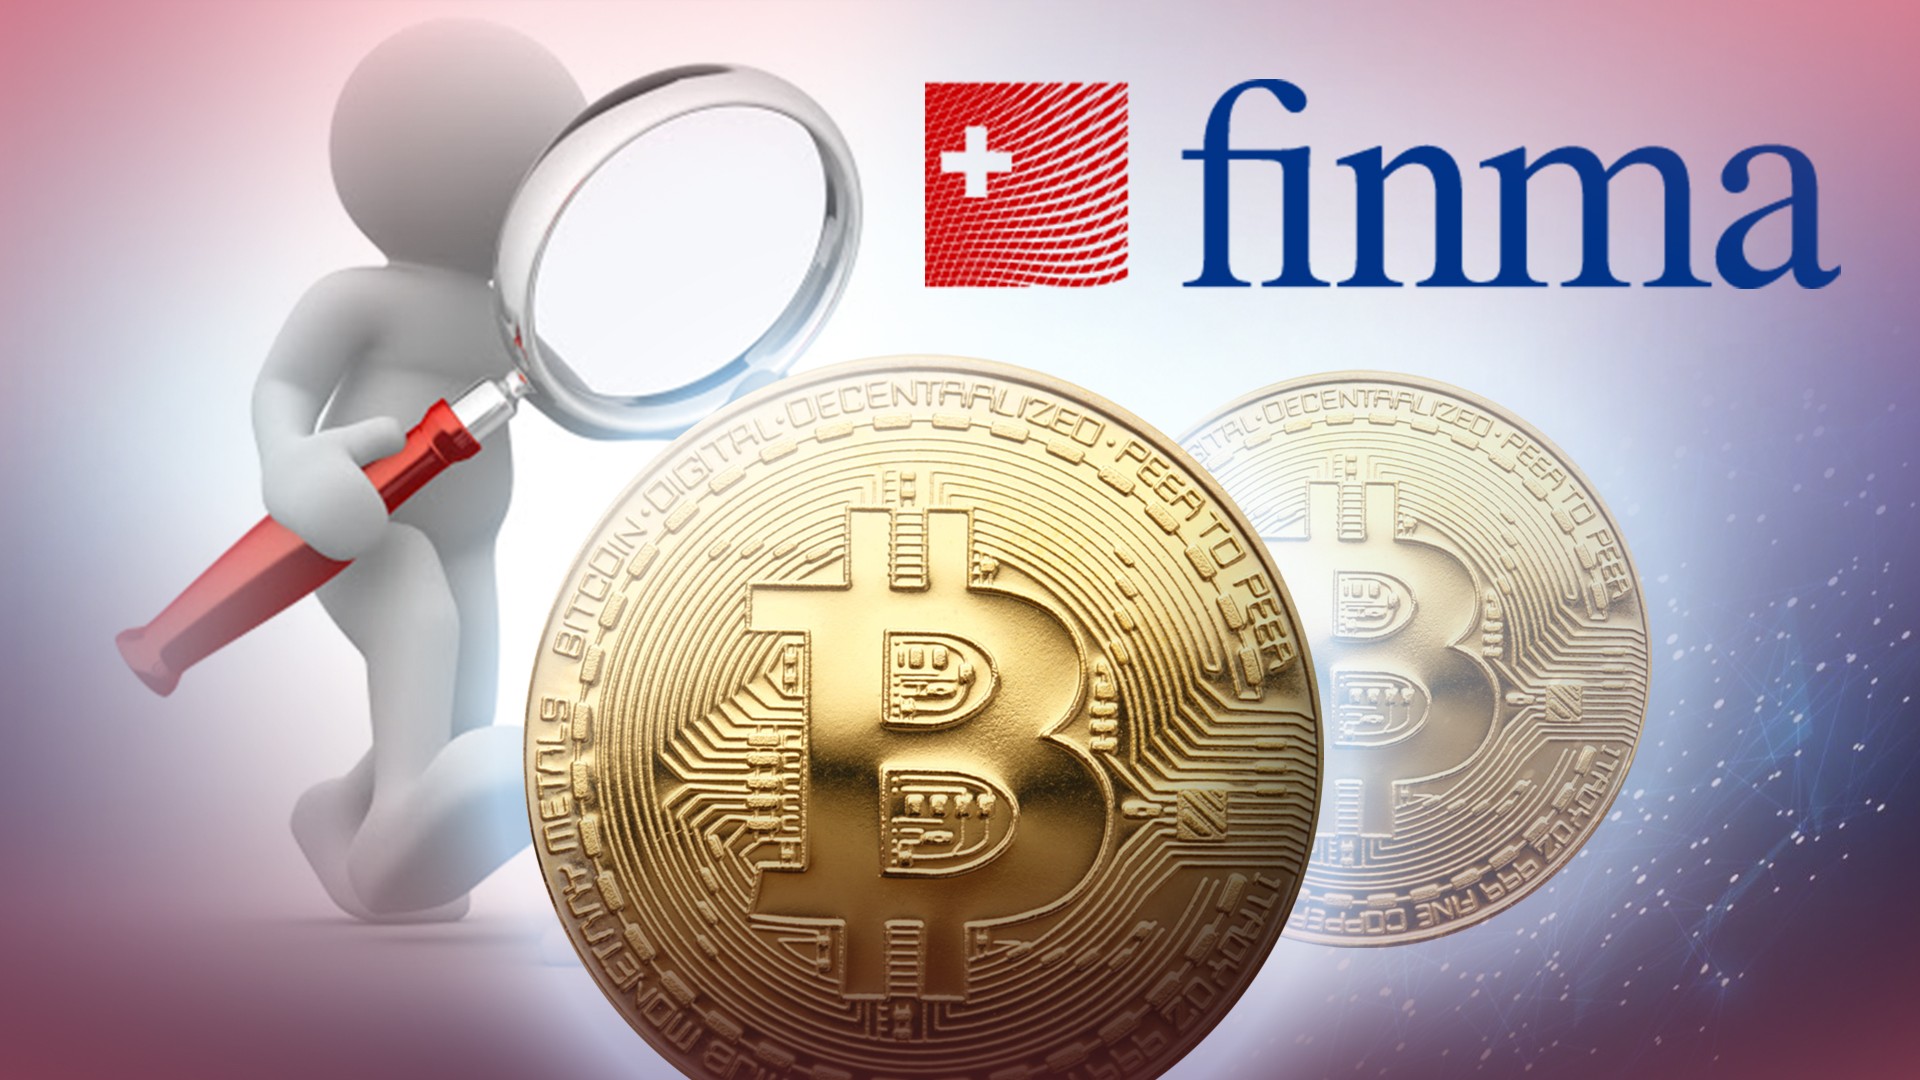 Finma regulation crypto 0.001579 btc price